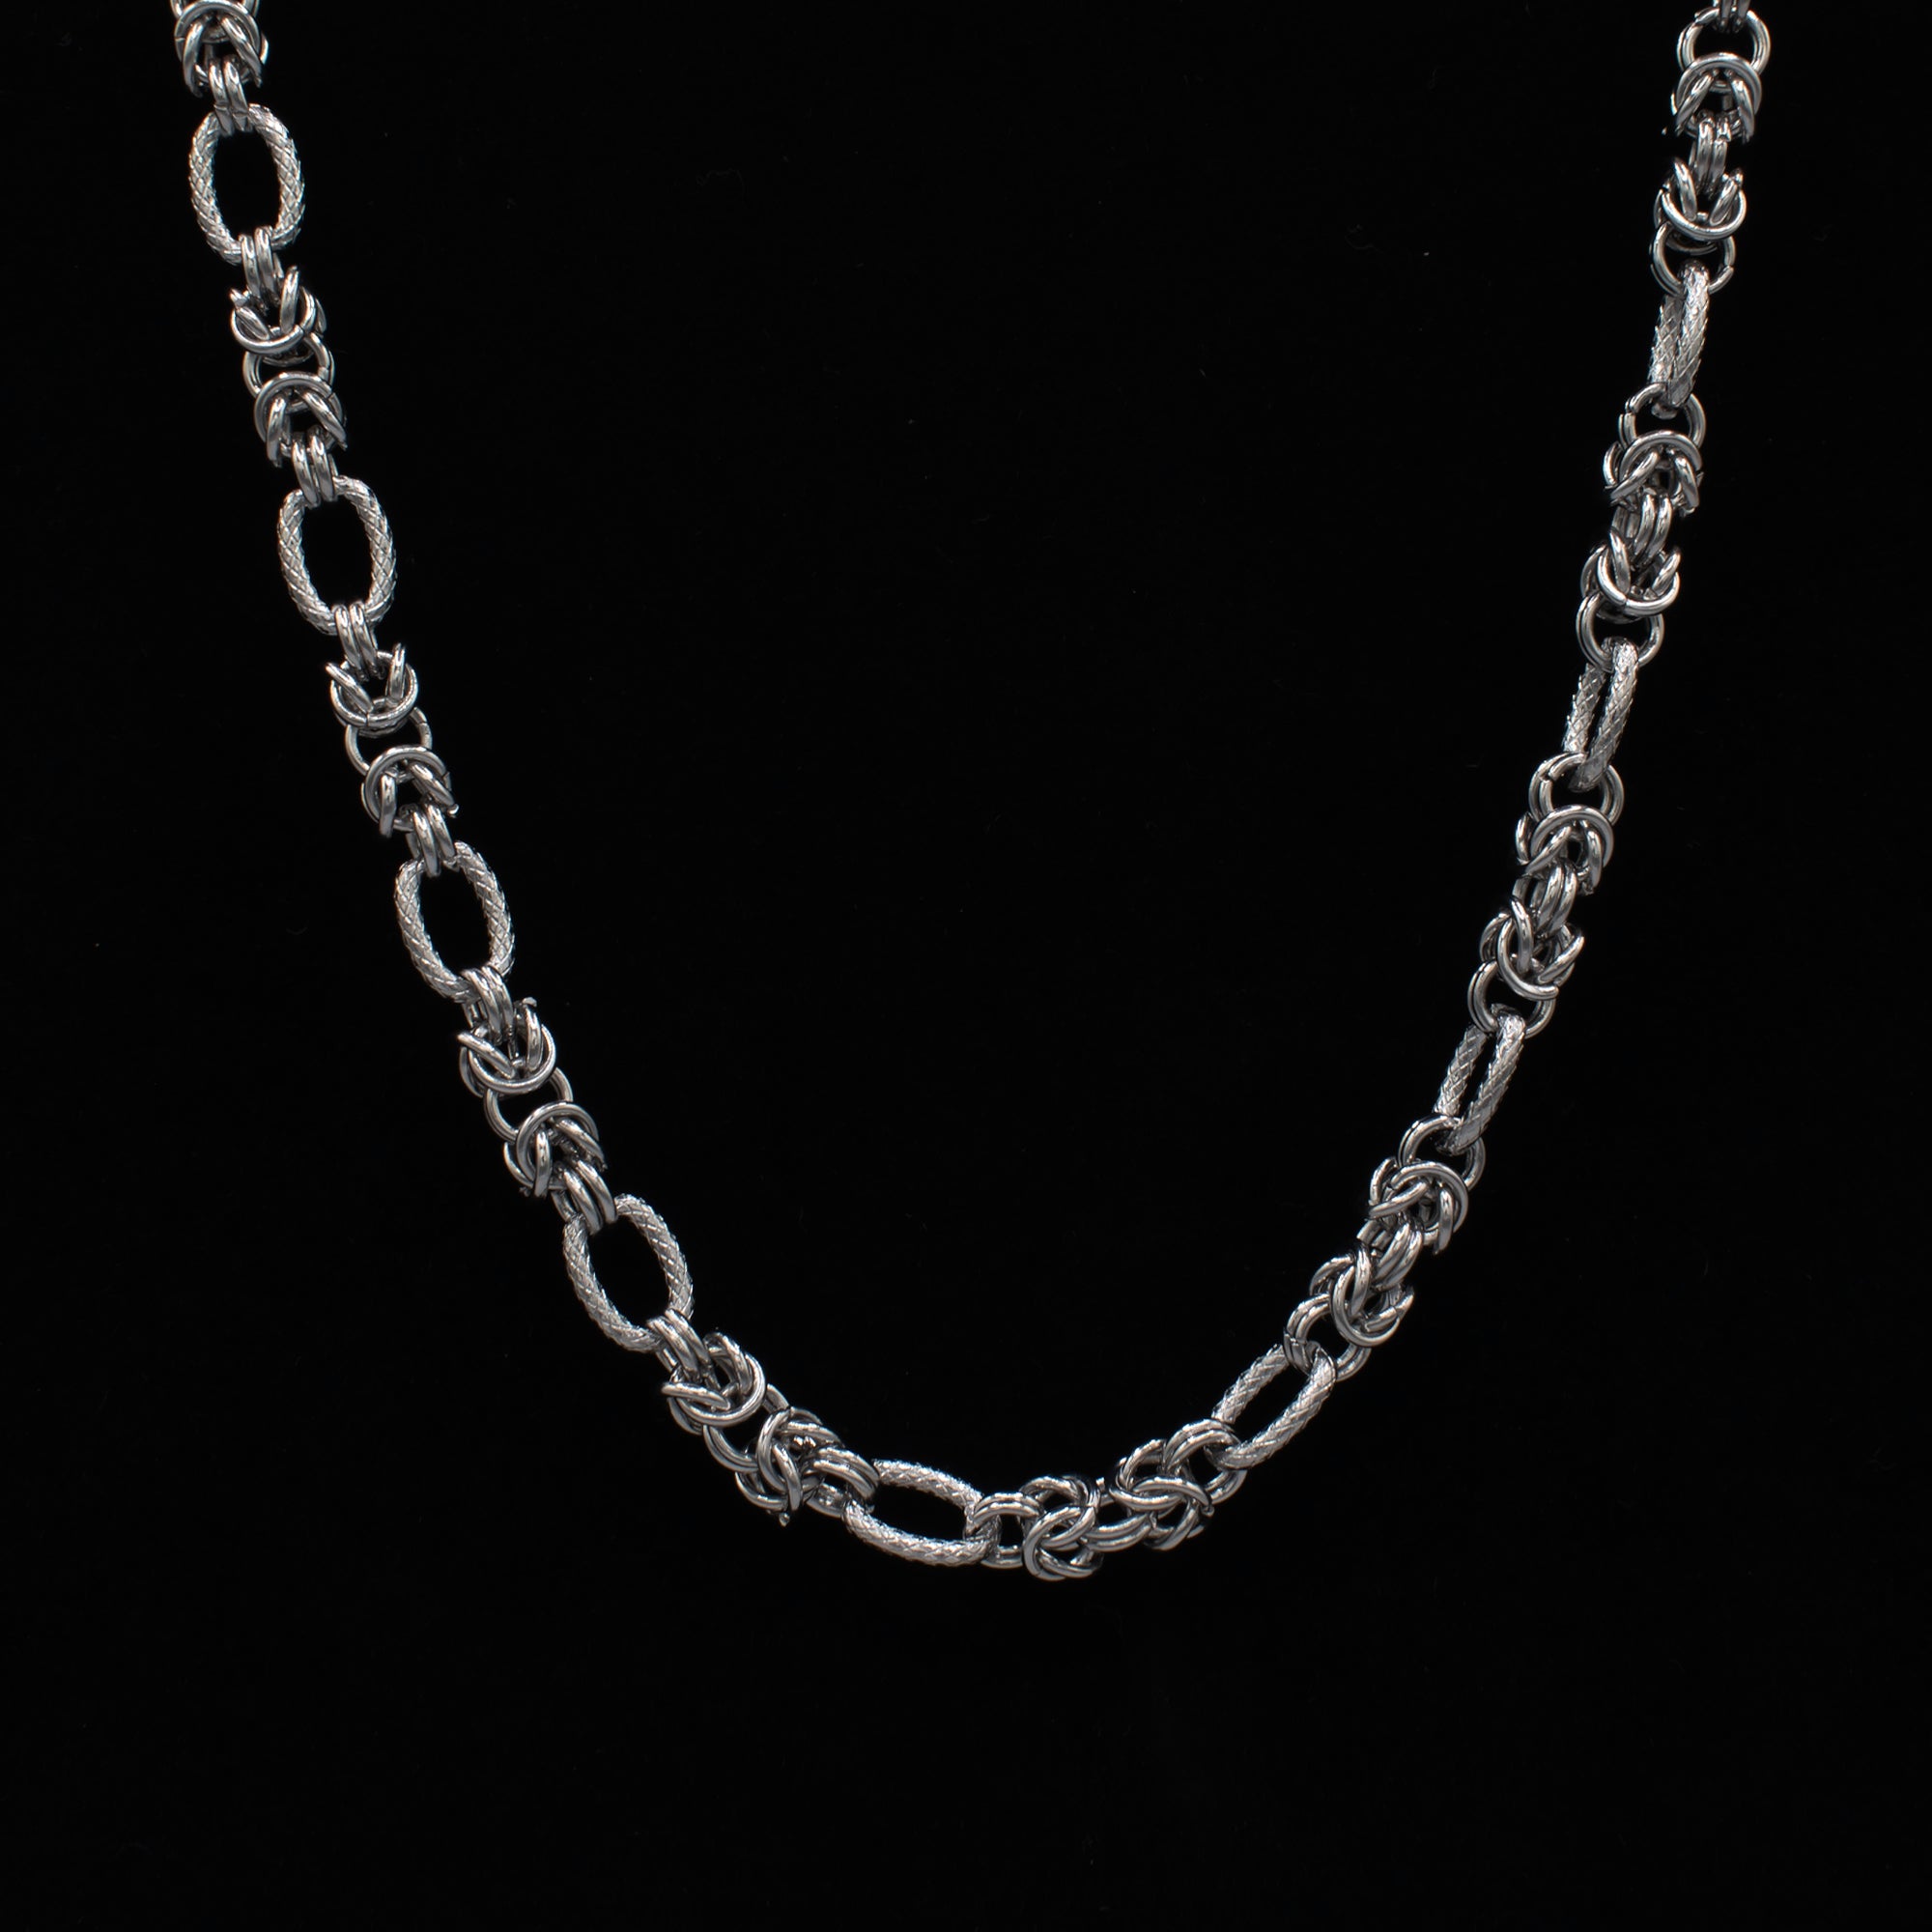 Byzantine Necklace - 10mm